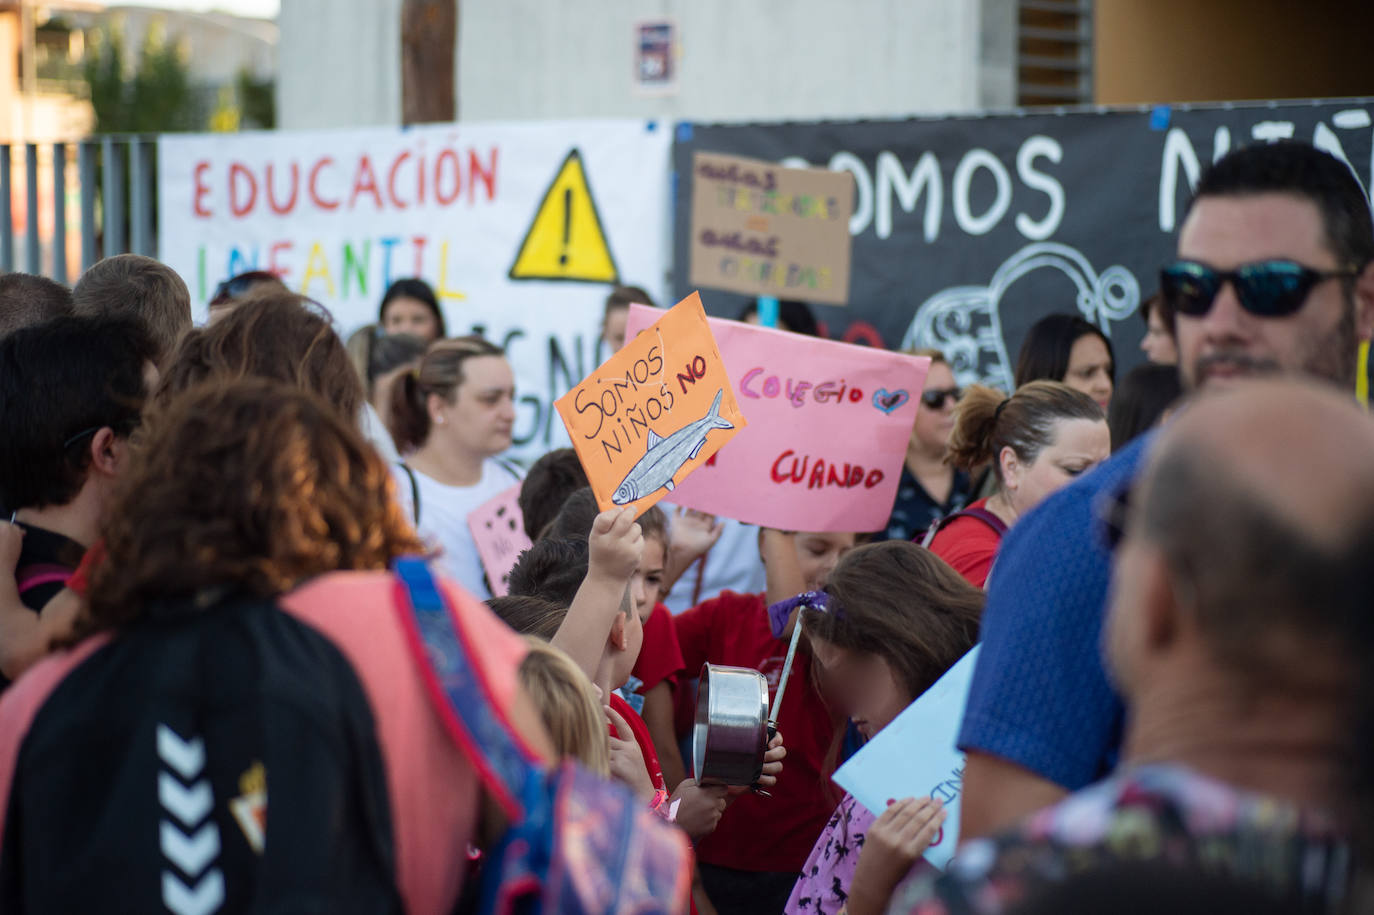 Los padres de los alumnos del colegio Juan de la Cierva se movilizaron para denunciar la masificación que padecen sus alumnos por la falta de aulas.